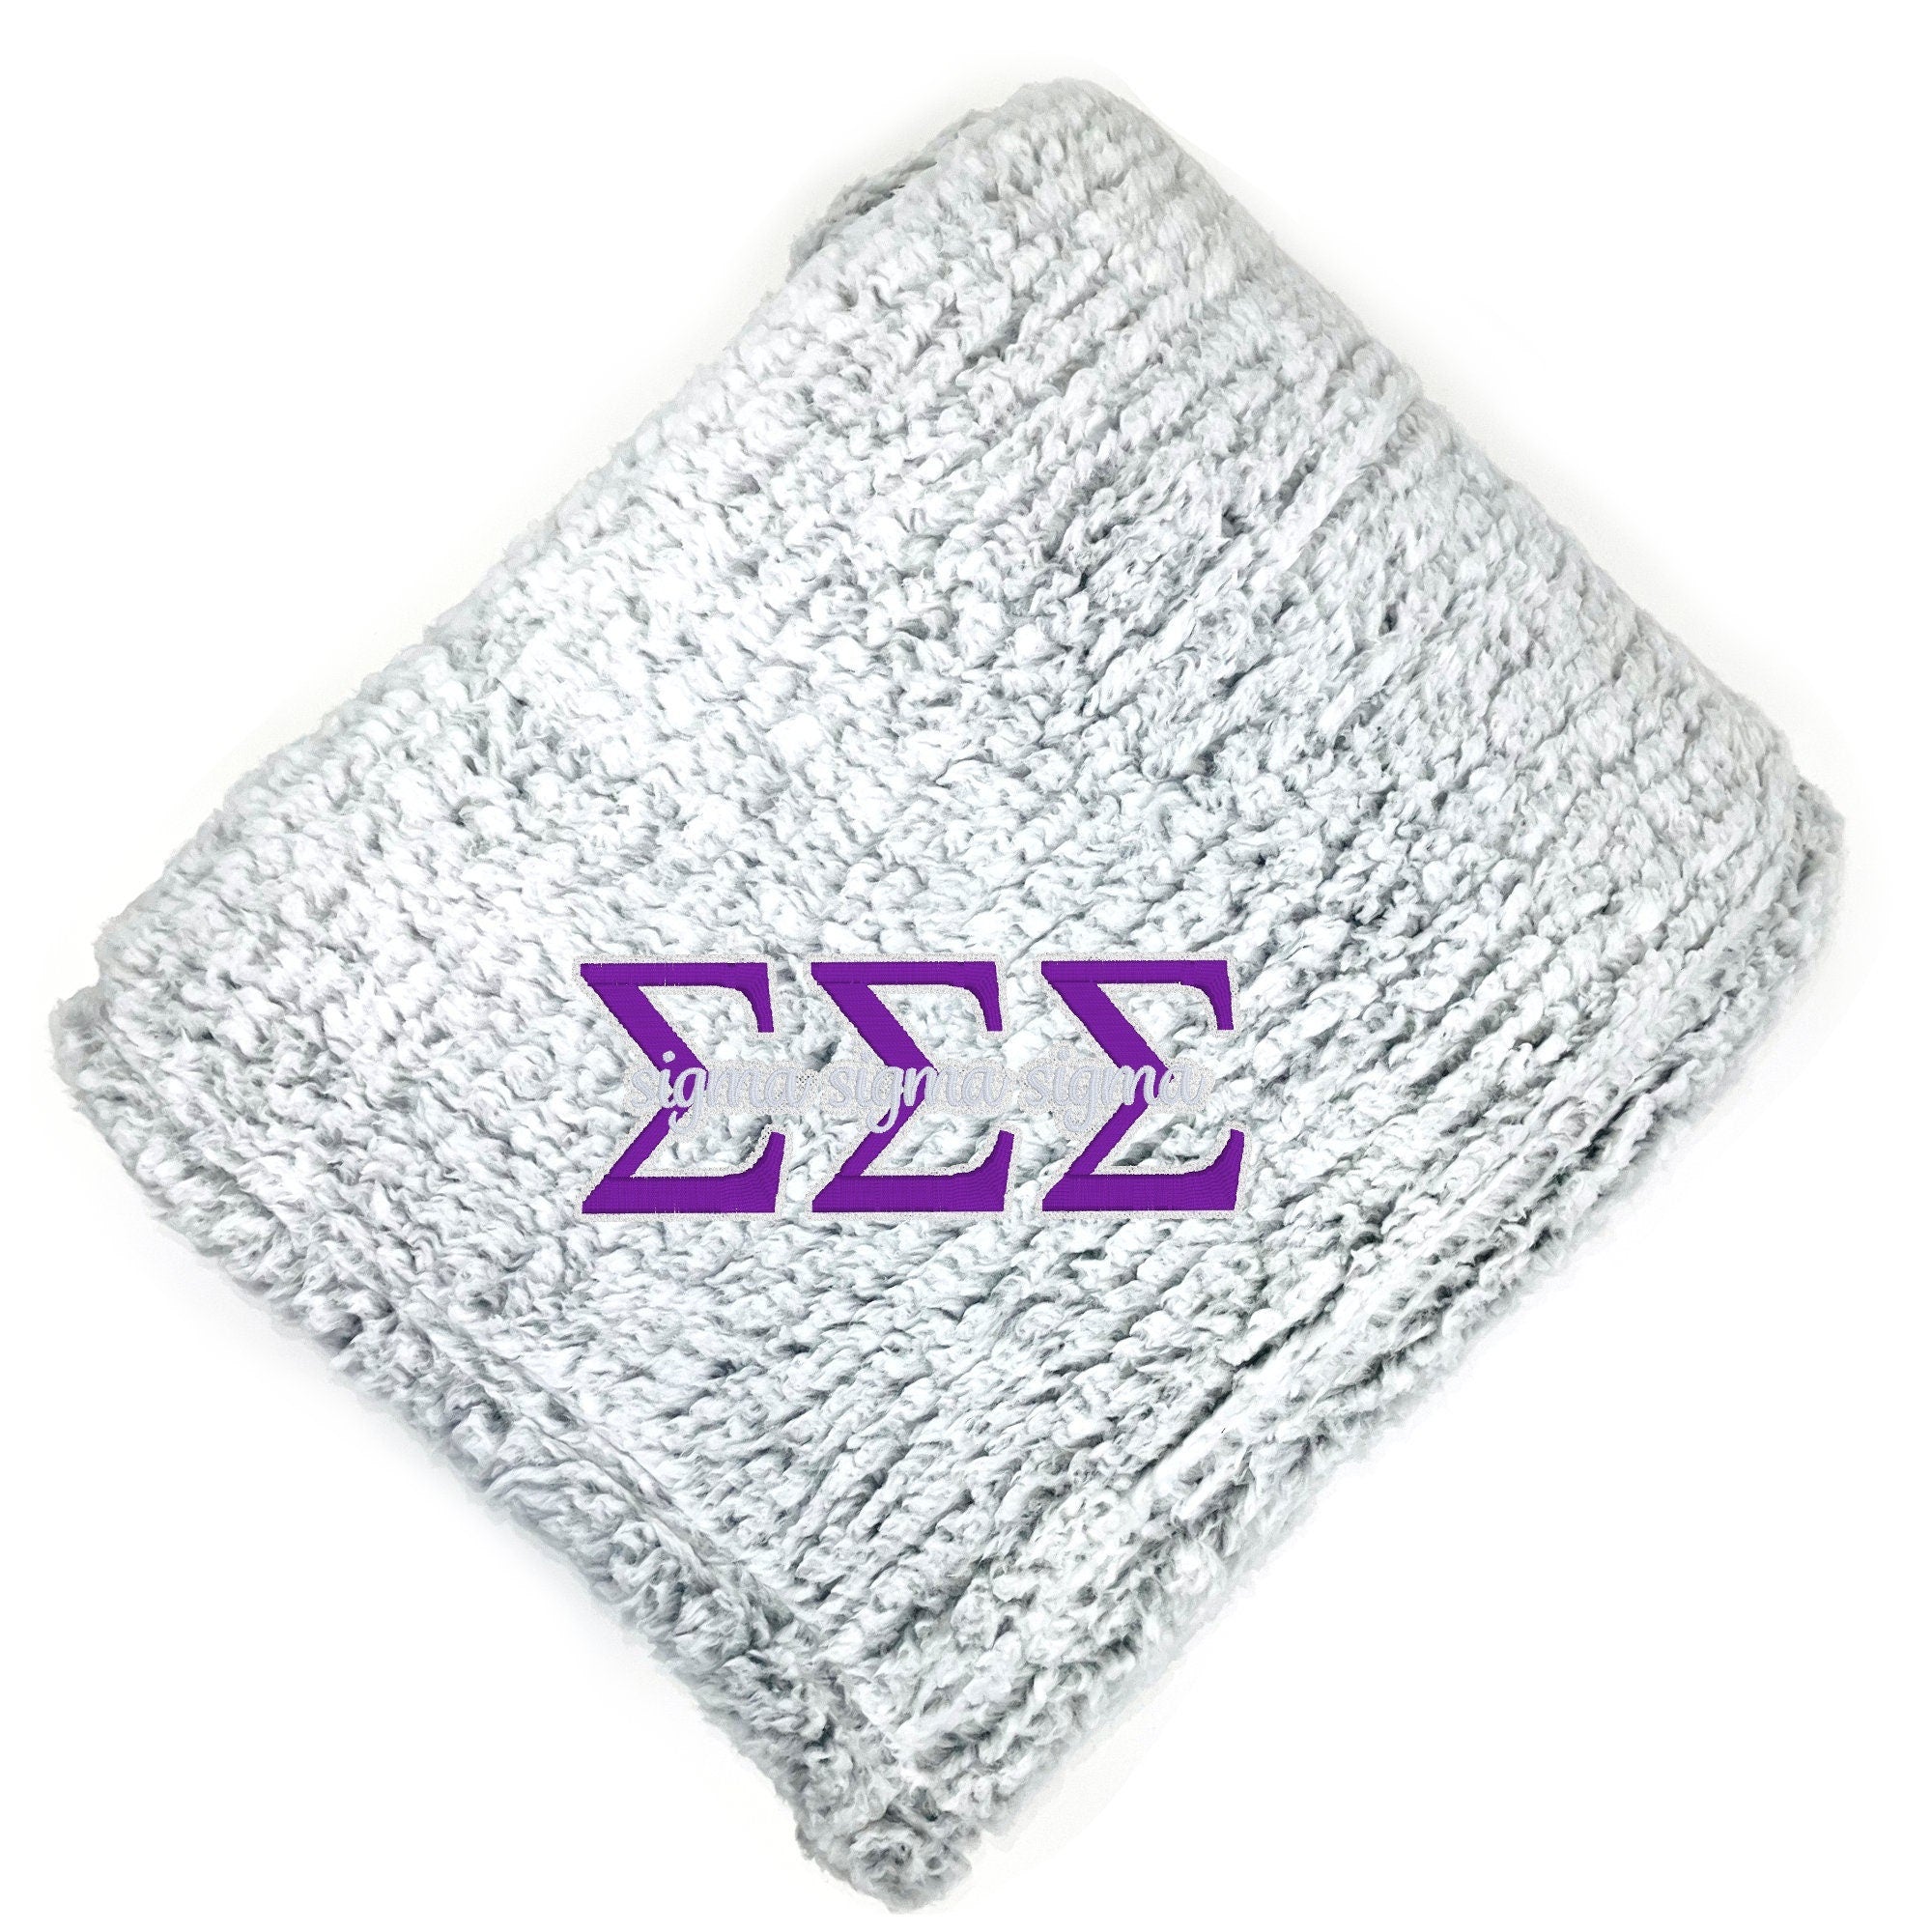 Sigma Sigma Sigma Fuzzy Sherpa Blanket - Go Greek Chic